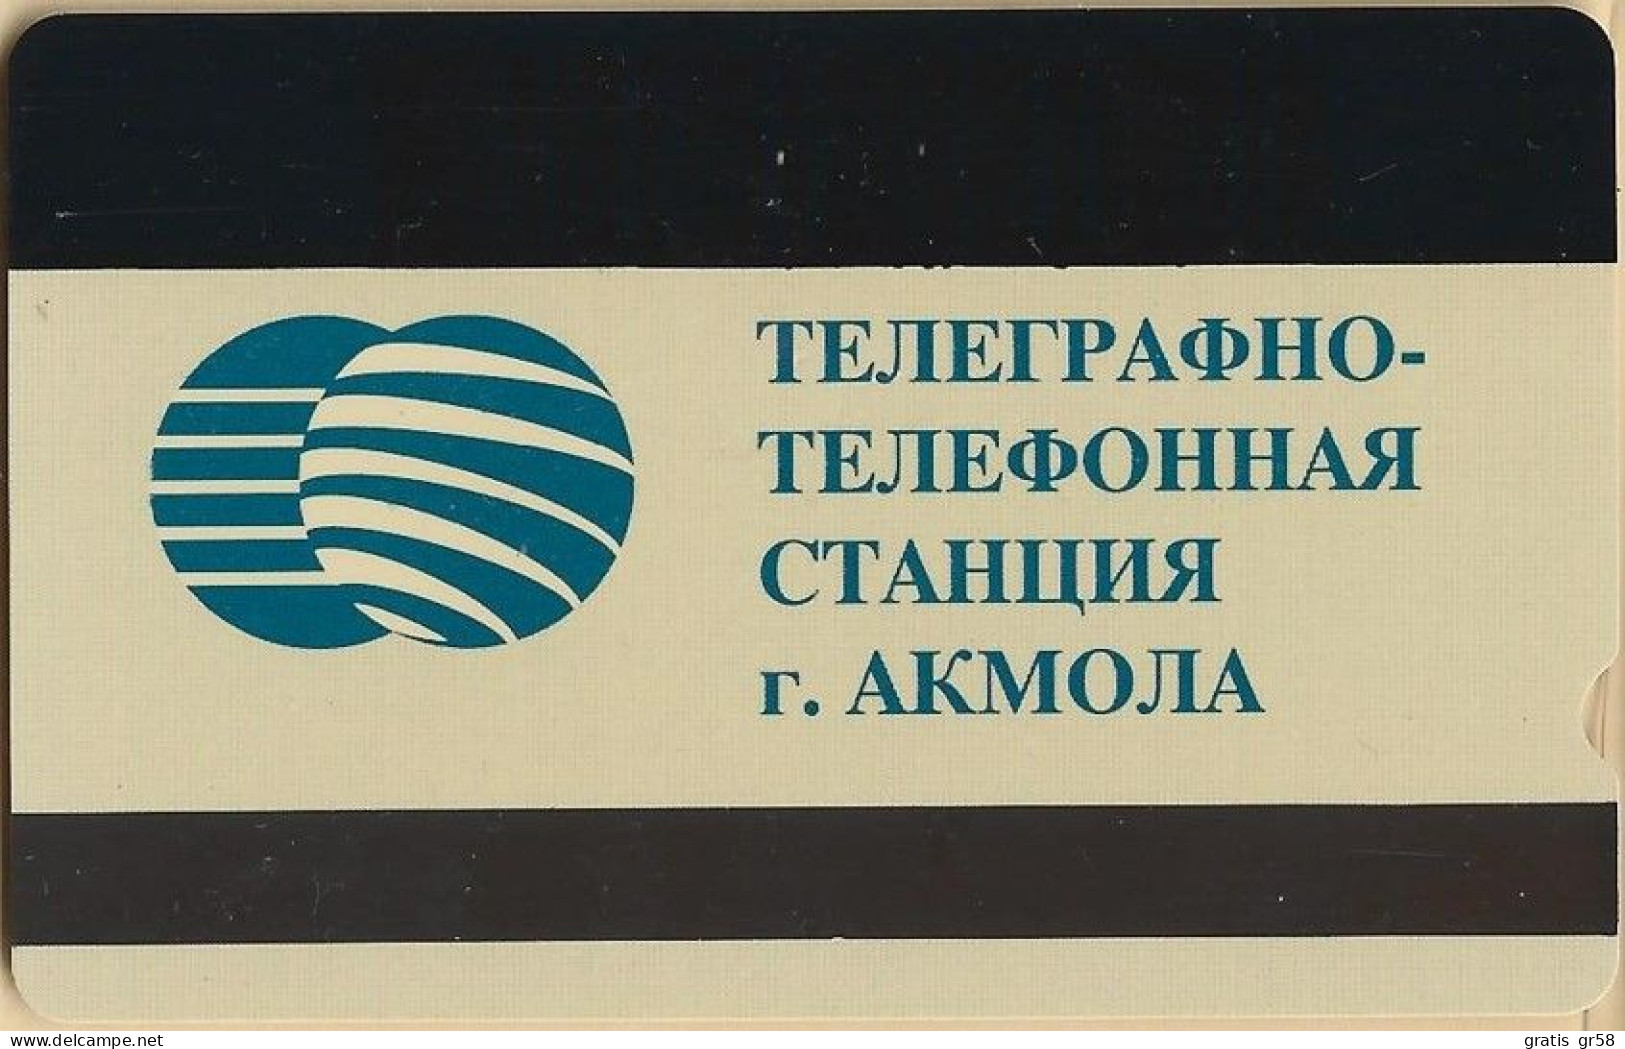 Kazakhstan - KZ-DEK-ALC-0001, Alcatel, Satel, Logo Dekatel, 10$, As Scan - Kazakhstan